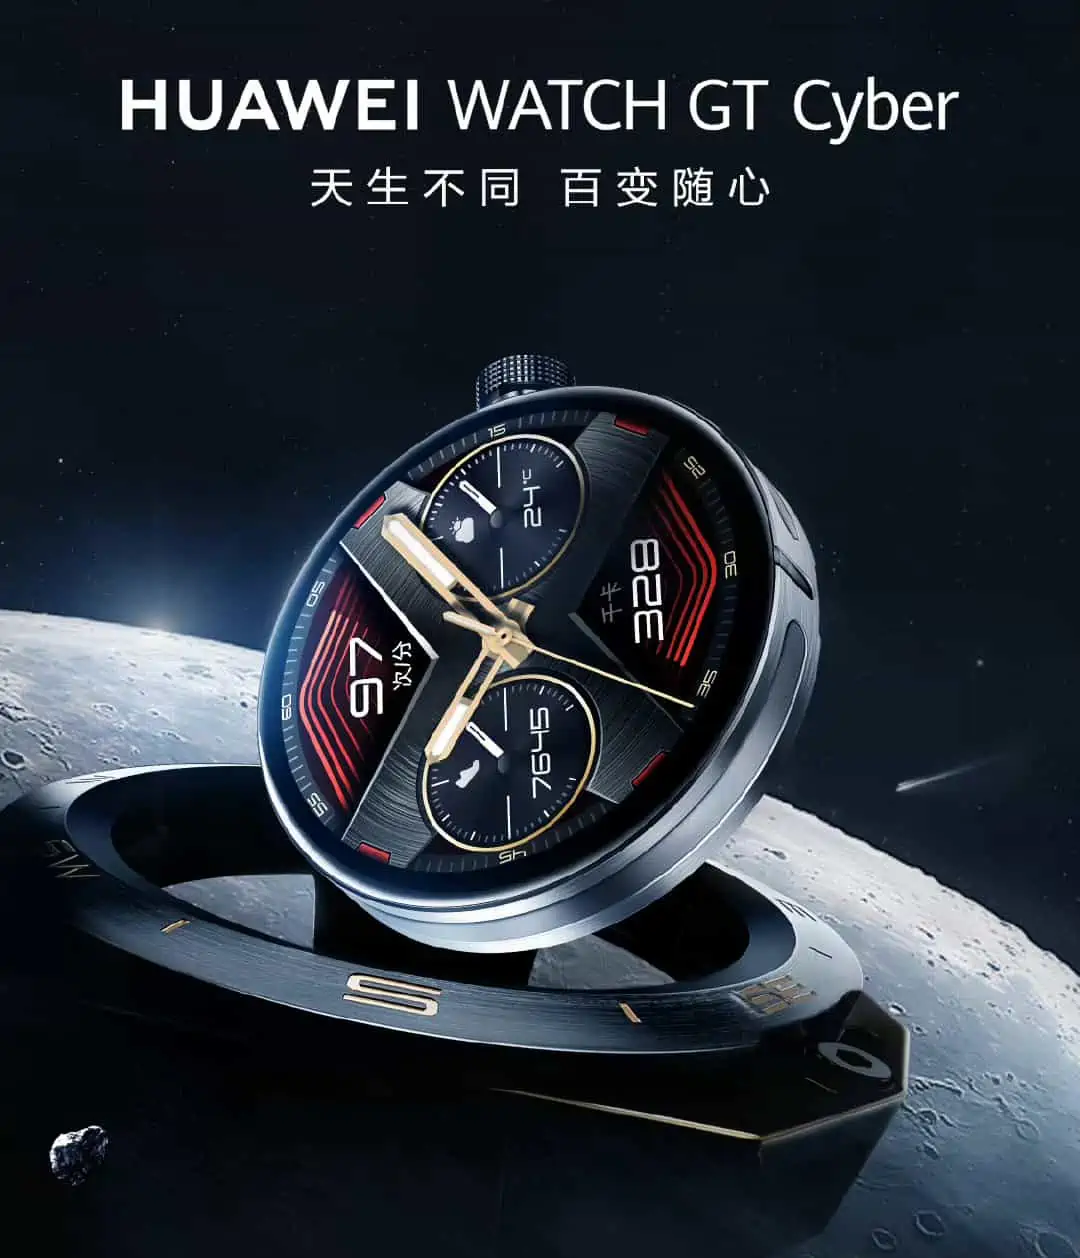 Huawei Watch GT Cyber teaser 1